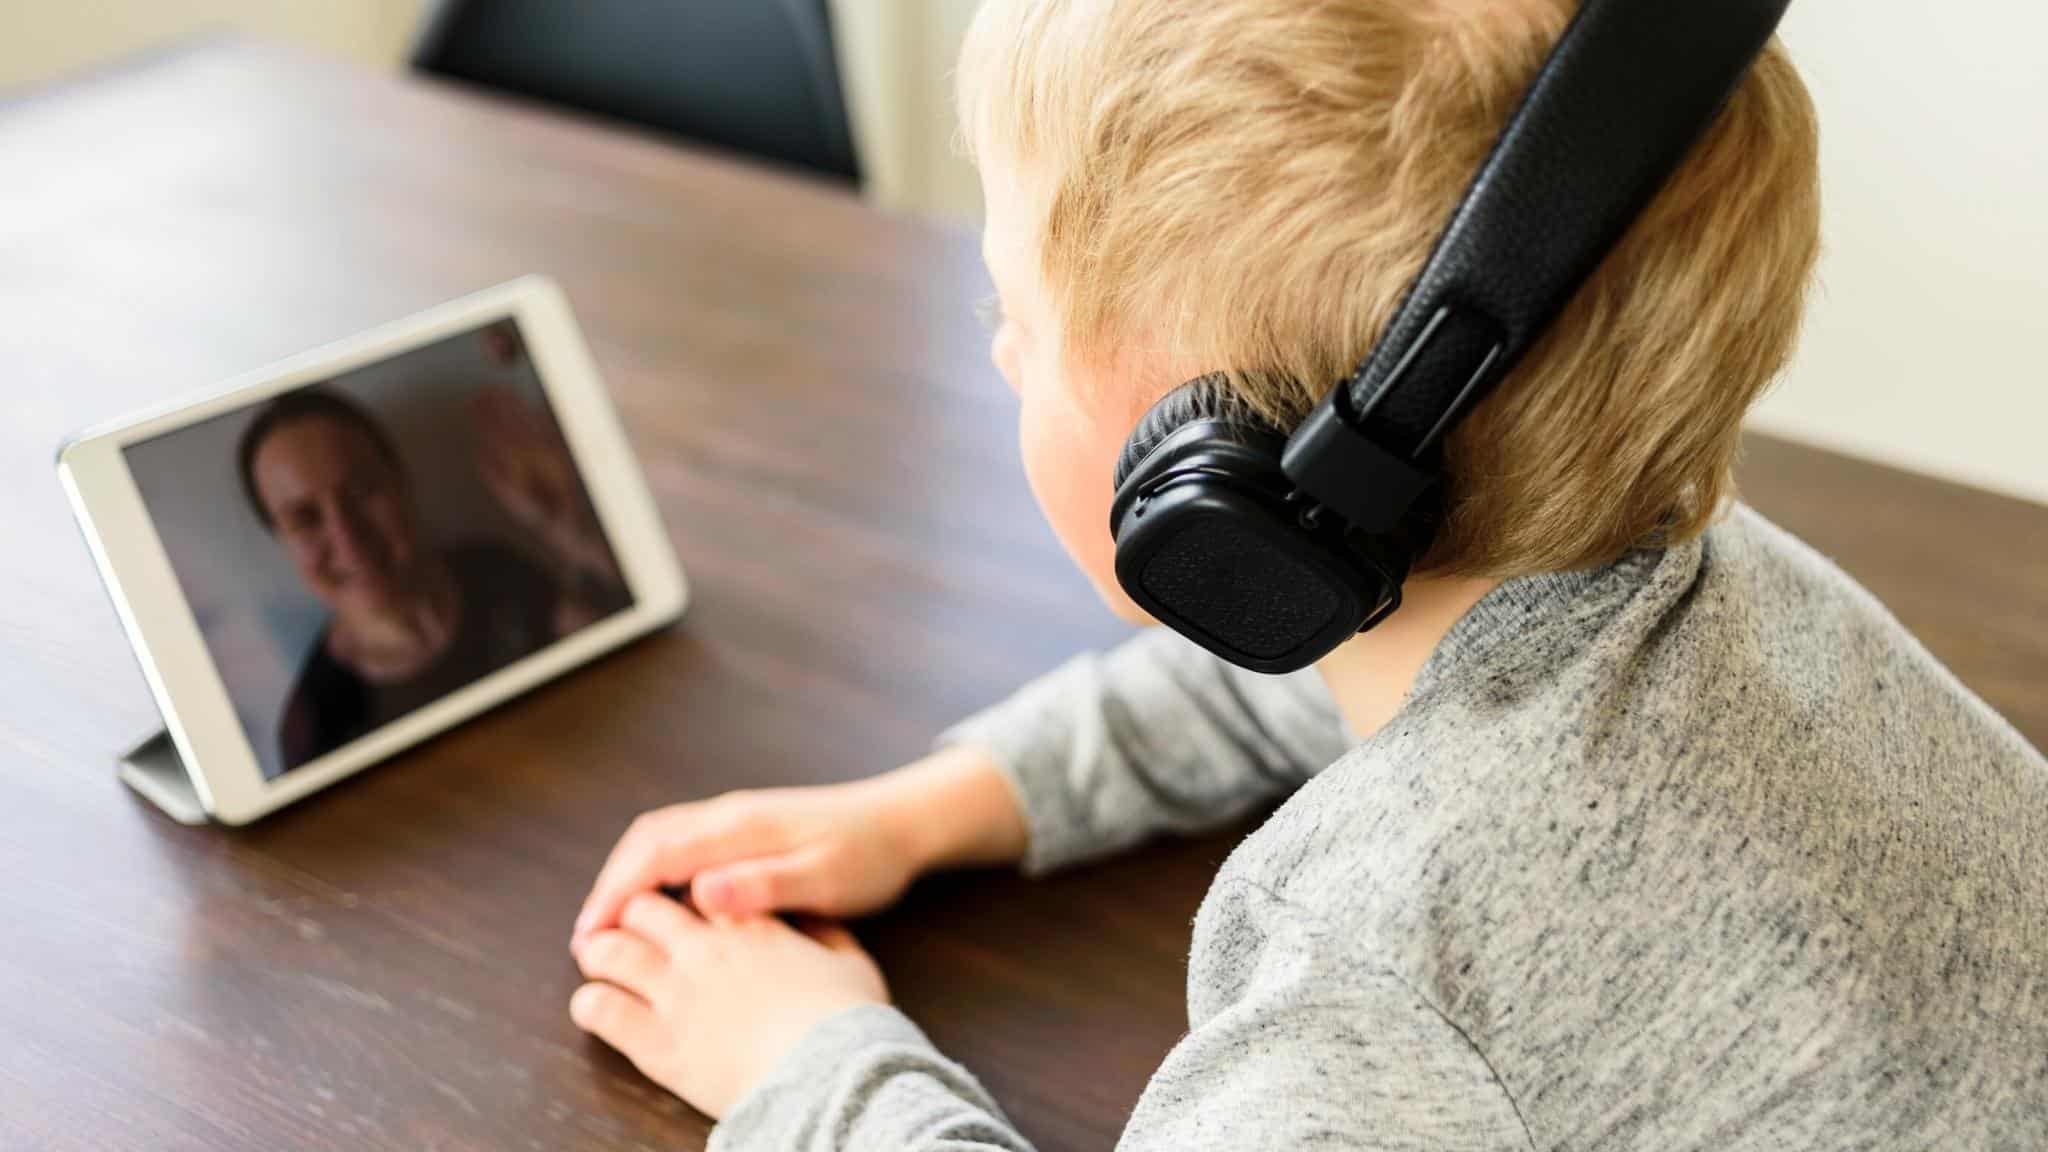 Die 5 besten Kinder-Tablets mit Youtube und Netflix für Video-Streaming